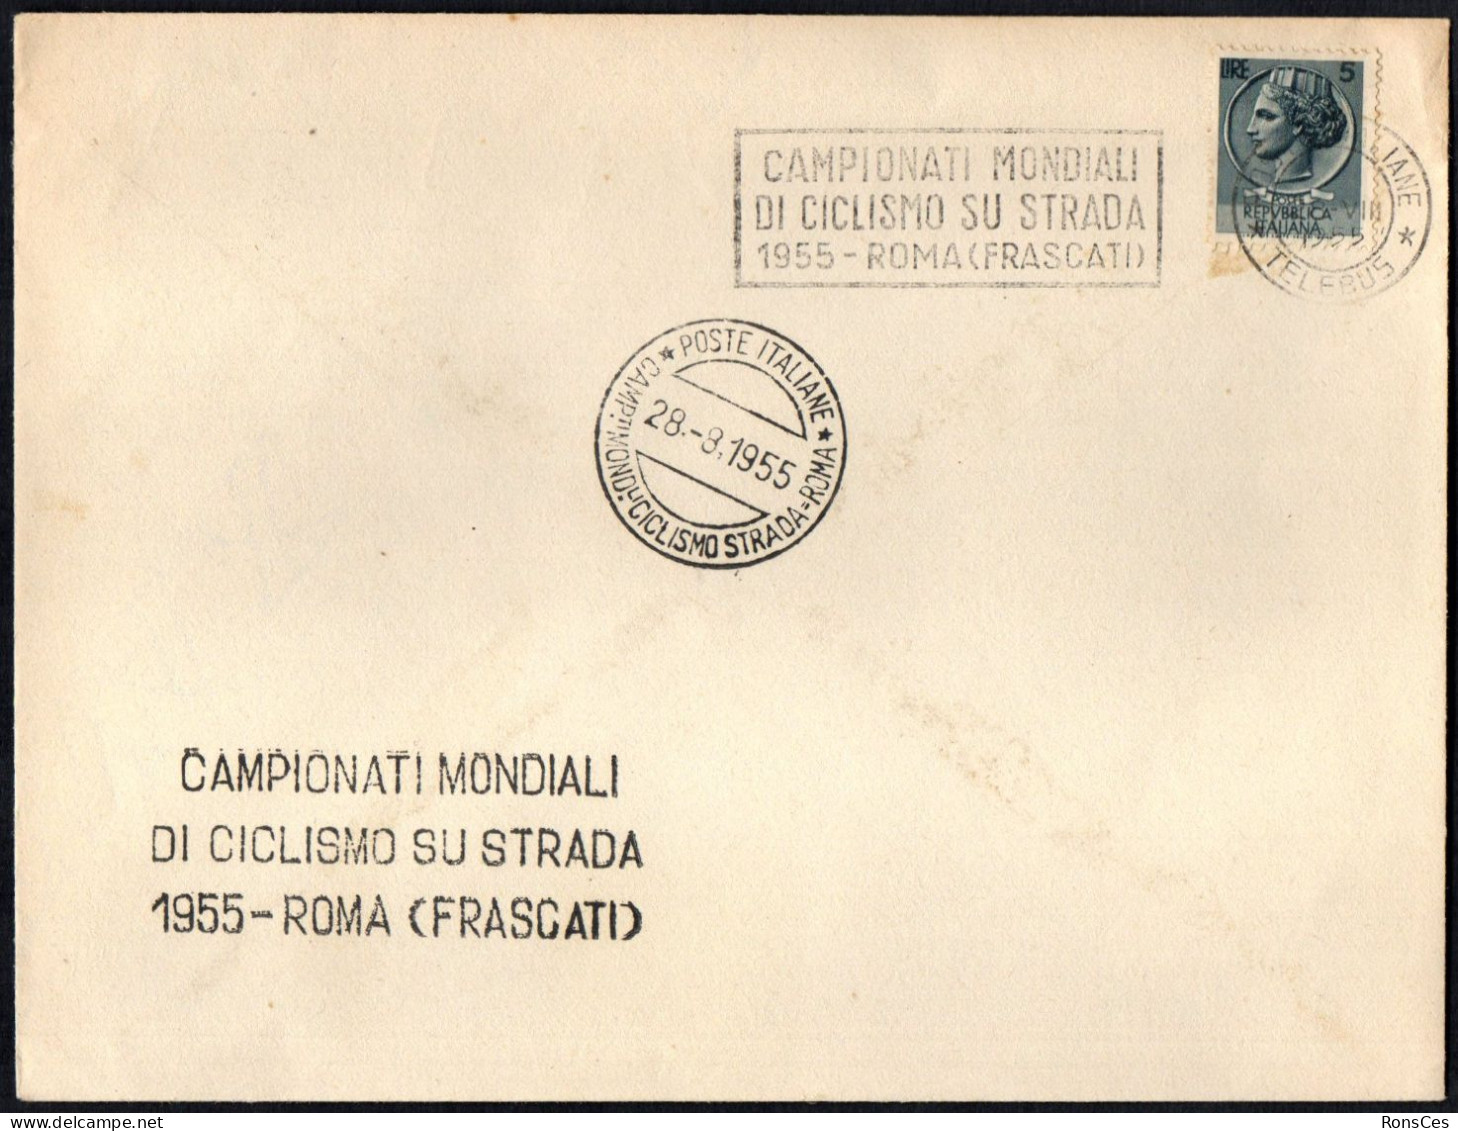 CYCLING - ITALIA ROMA 1955 - CAMPIONATI MONDIALI DI CICLISMO SU STRADA (FRASCATI) - A - Wielrennen